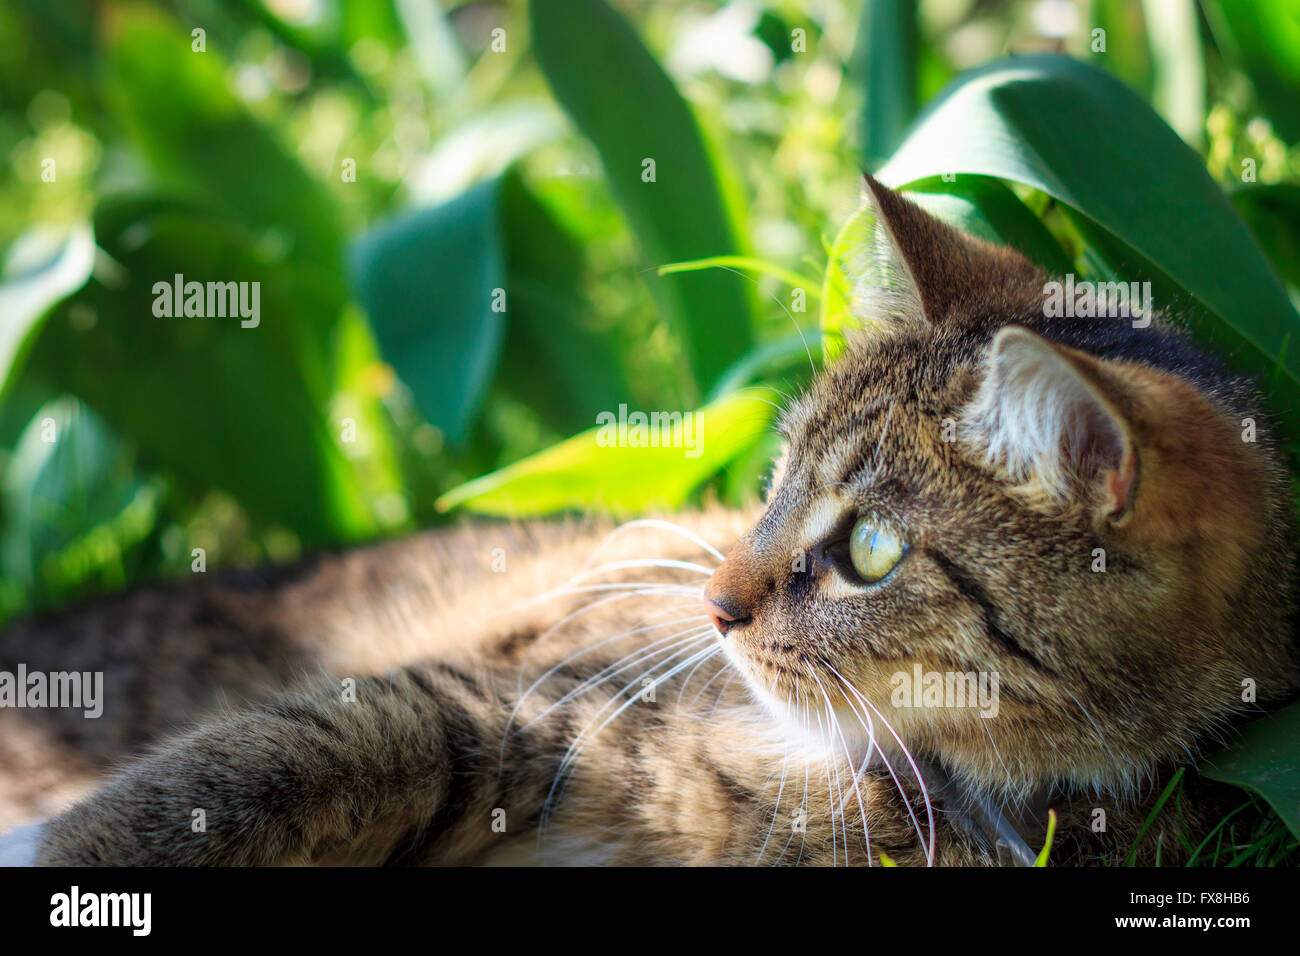 Gatto sdraiato in erba e fiori guardando a sinistra. Il verde delle foglie in background con spazio di copia Foto Stock